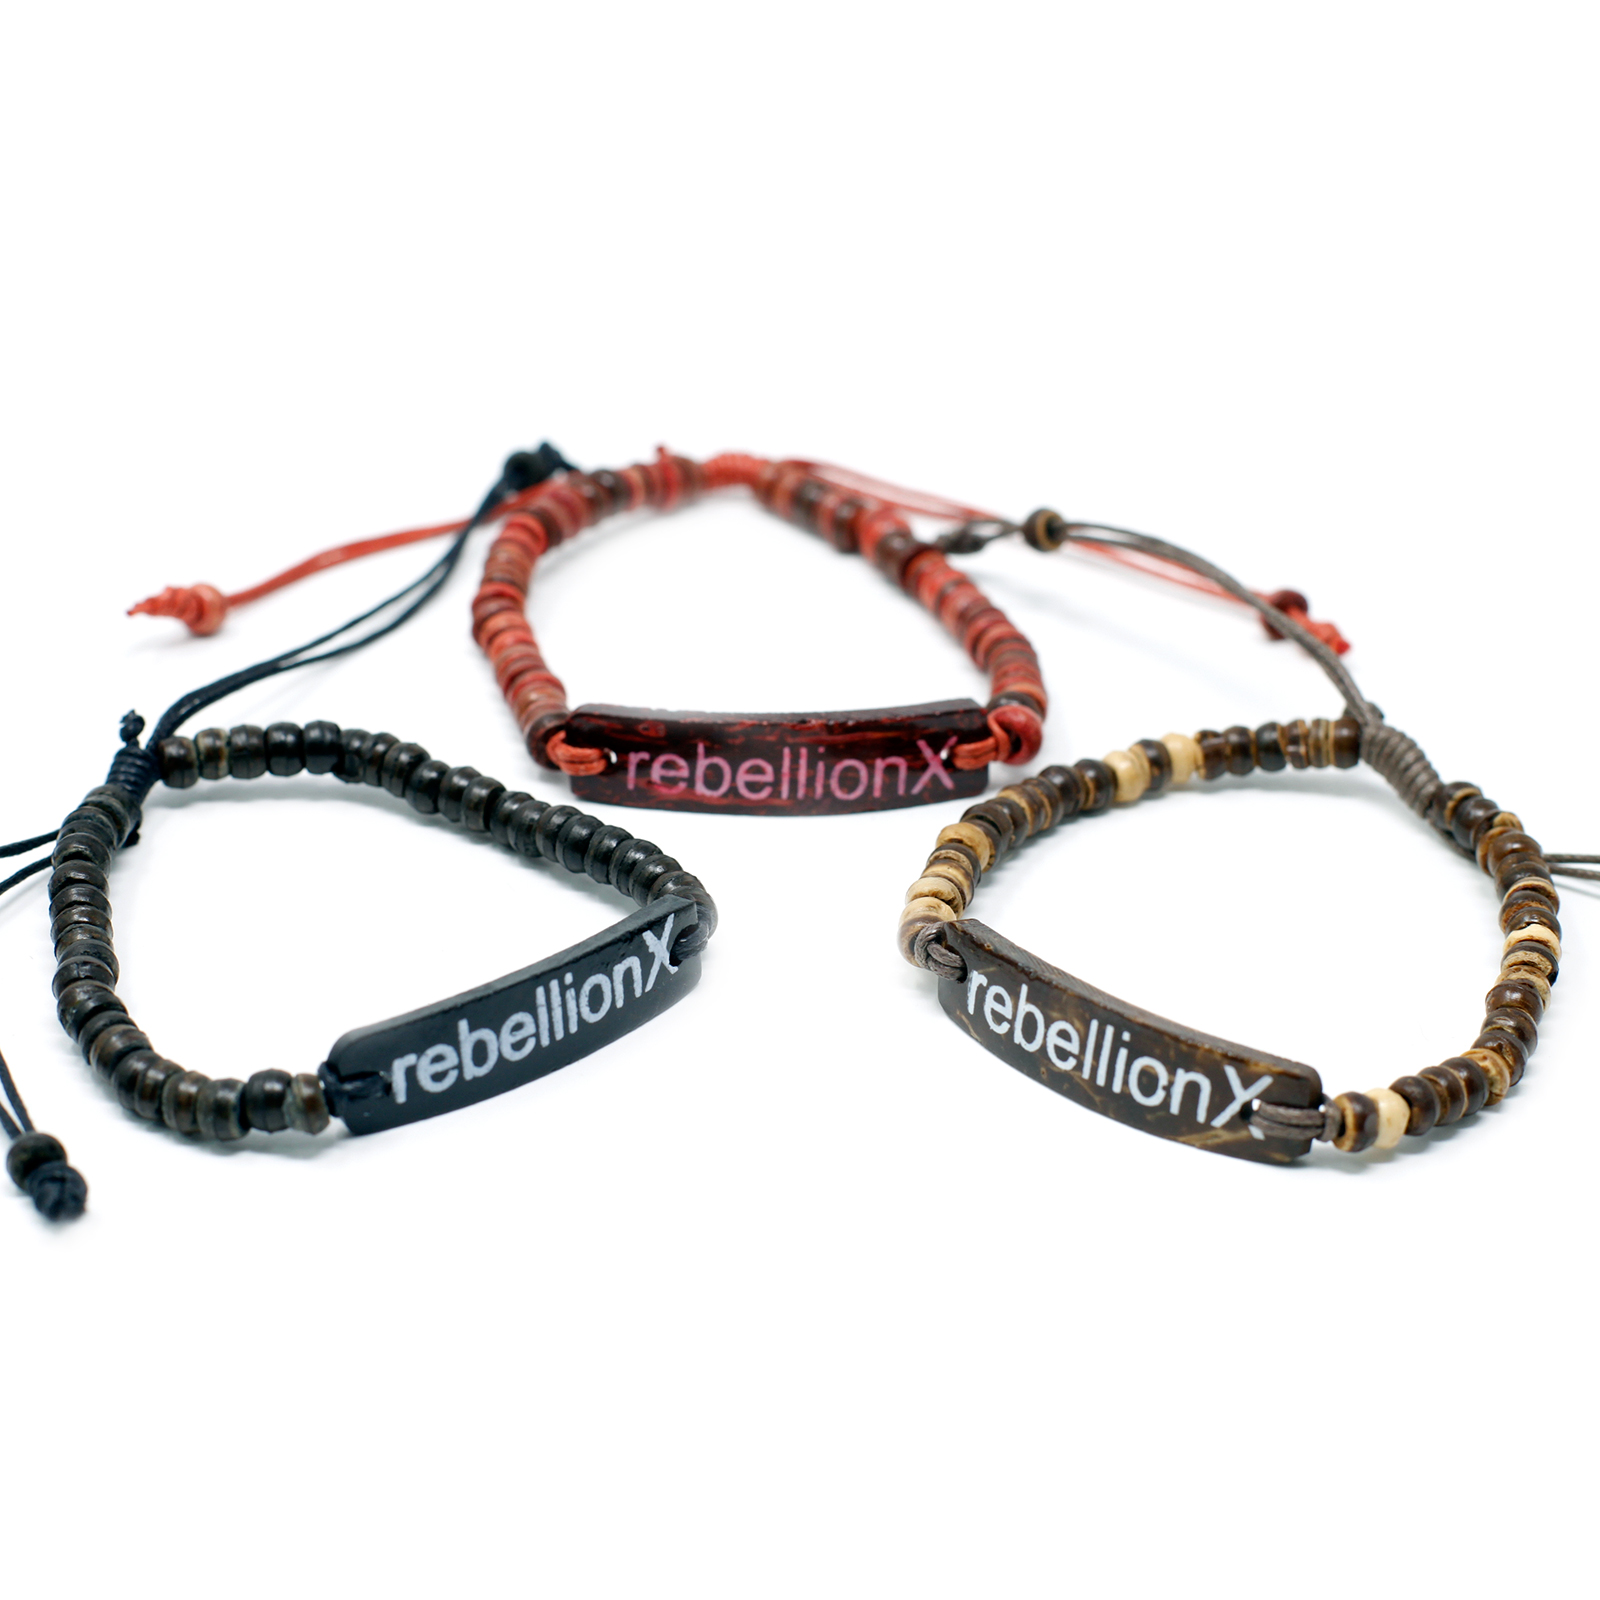 6 x Coco Slogan Bracelets - Rebellion X - Click Image to Close